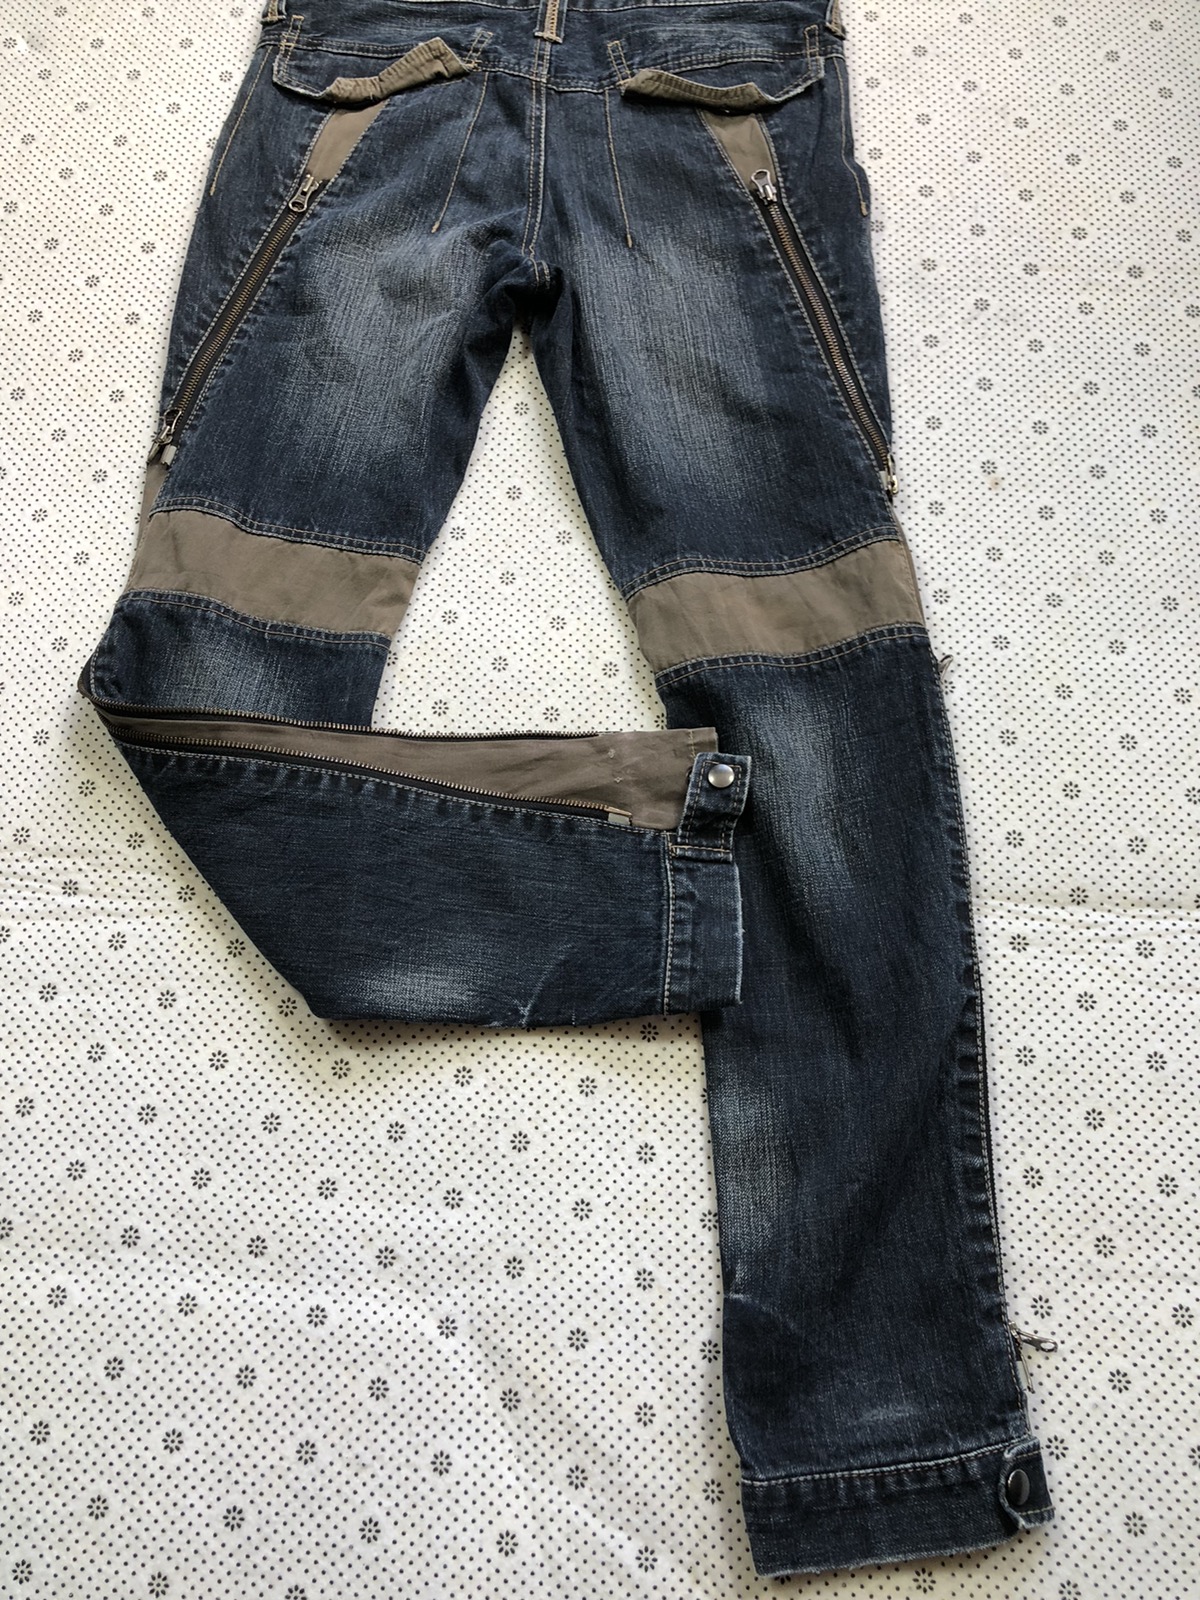 Archival Clothing - PPFM bondage jeans tactical zipper